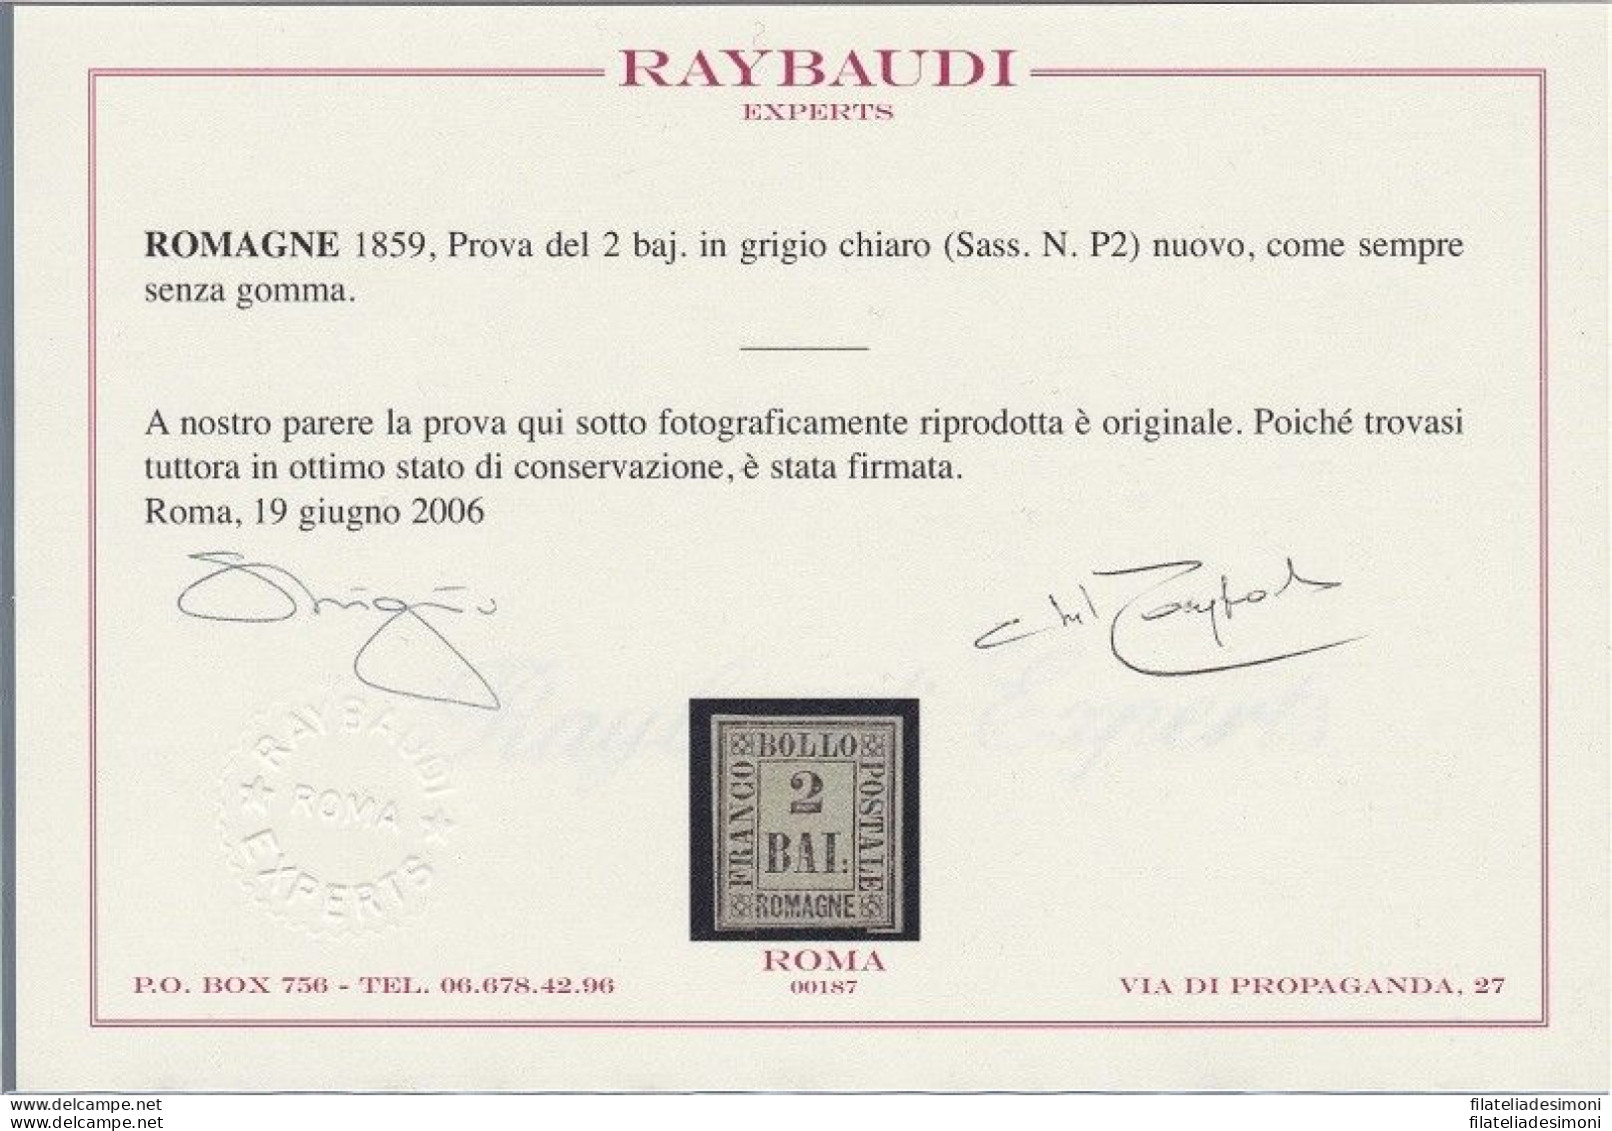 1859 Romagne, Prova Del 2 Baj (P2) EMESSO SENZA GOMMA Certificato Raybaudi - Romagne